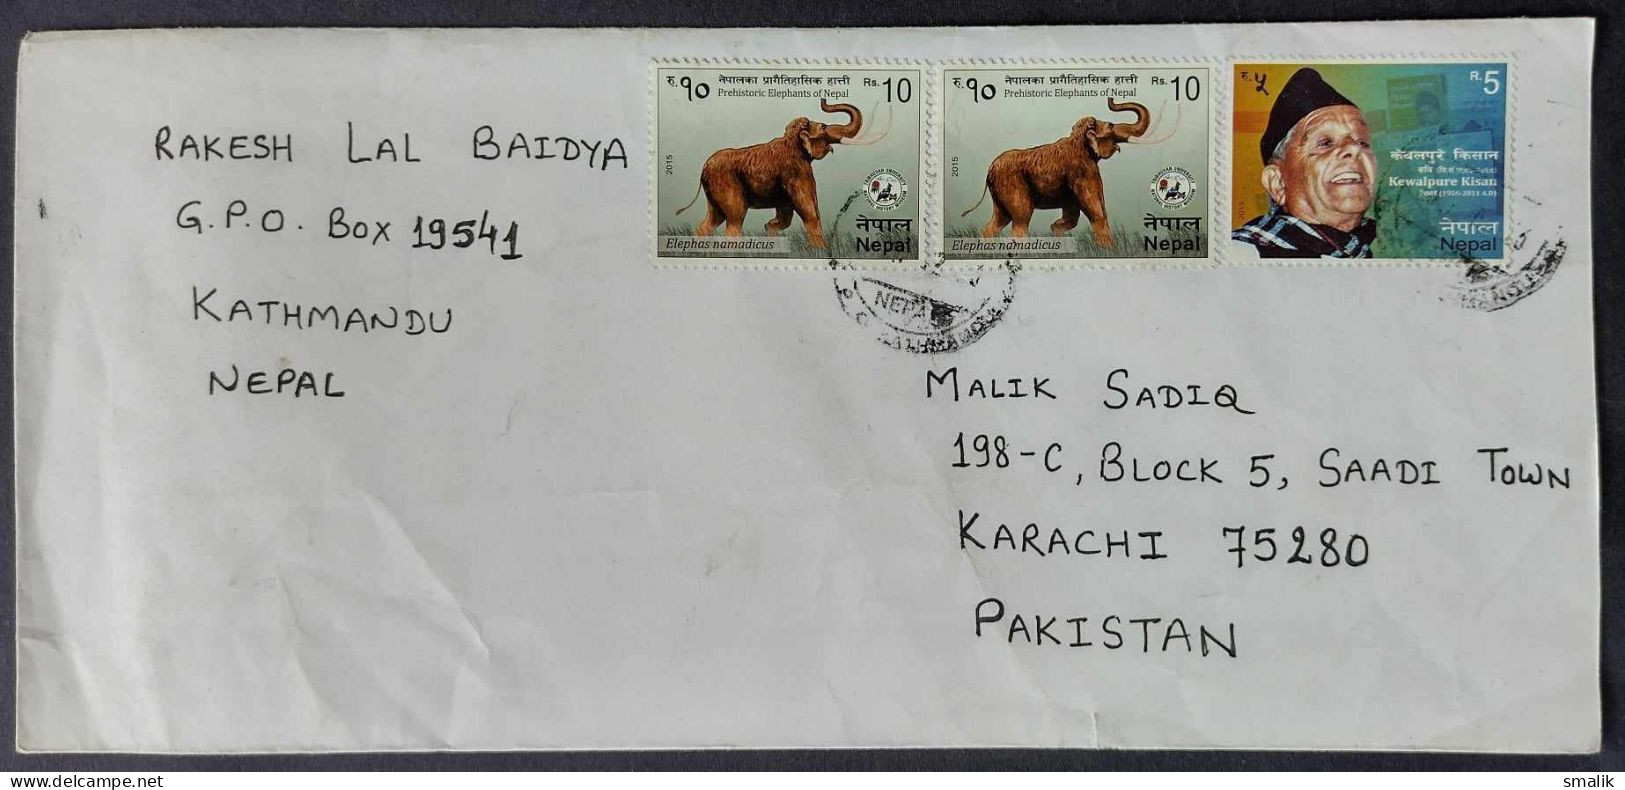 NEPAL Postal History Cover On Elephant, Kewalpure Kisan, Poet, Postal Used 2017 - Nepal